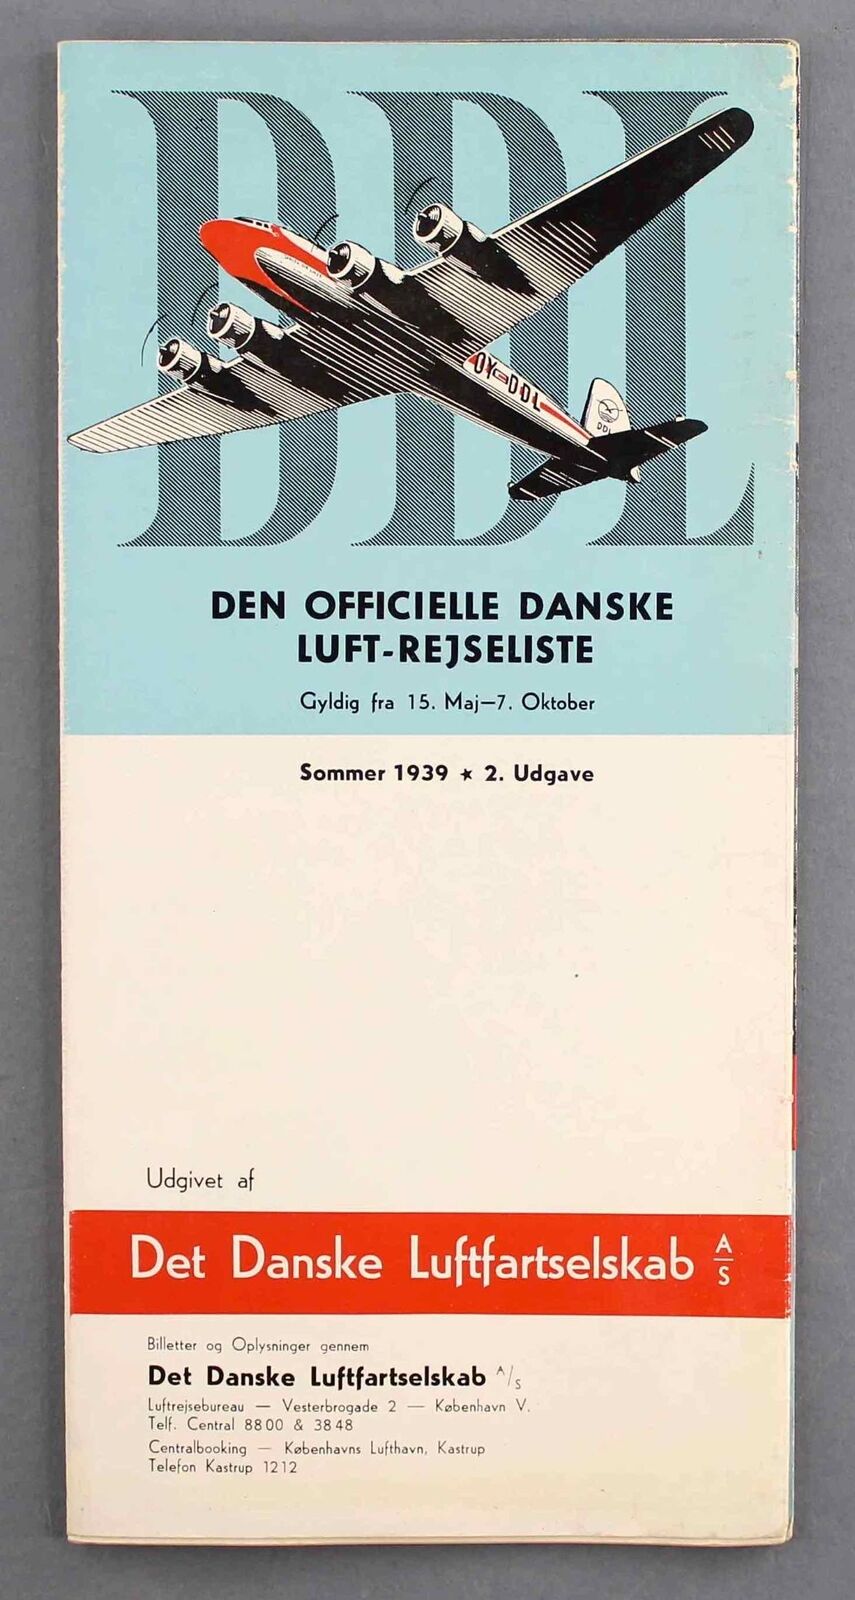 DDL DANISH AIR LINES SUMMER 1939 TIMETABLE DET DANSKE LUFTFARTSELSKAB DENMARK